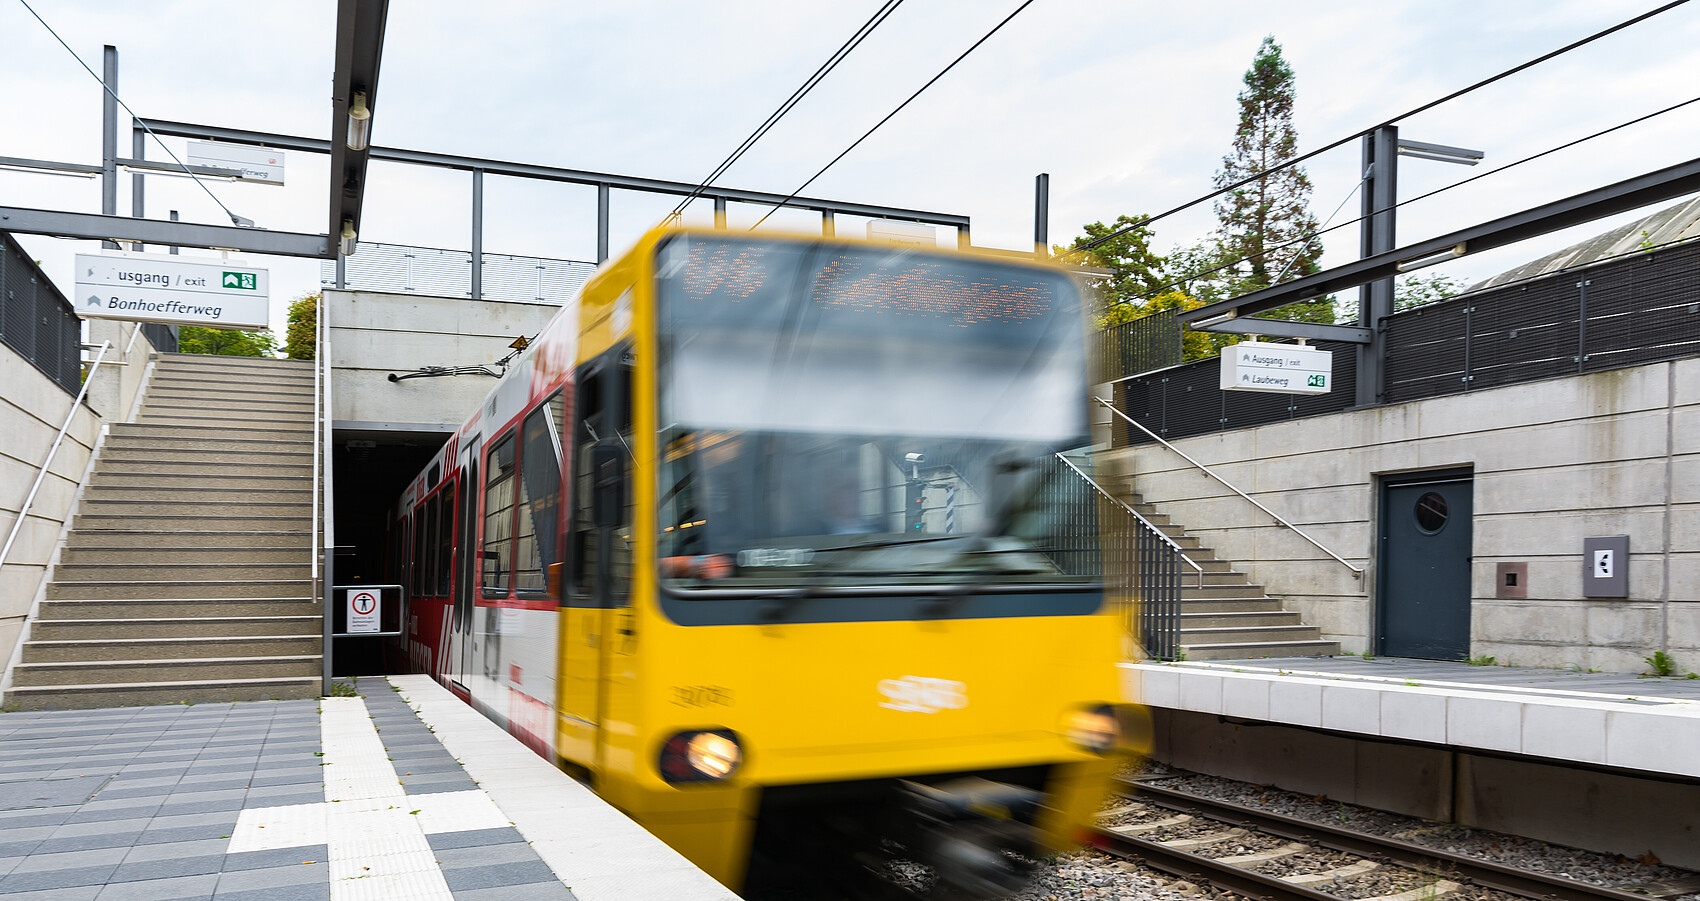 Bild zeigt U-Bahn-Fahrzeug der Stuttgarter Straßenbahnen AG, das in eine Station einfährt